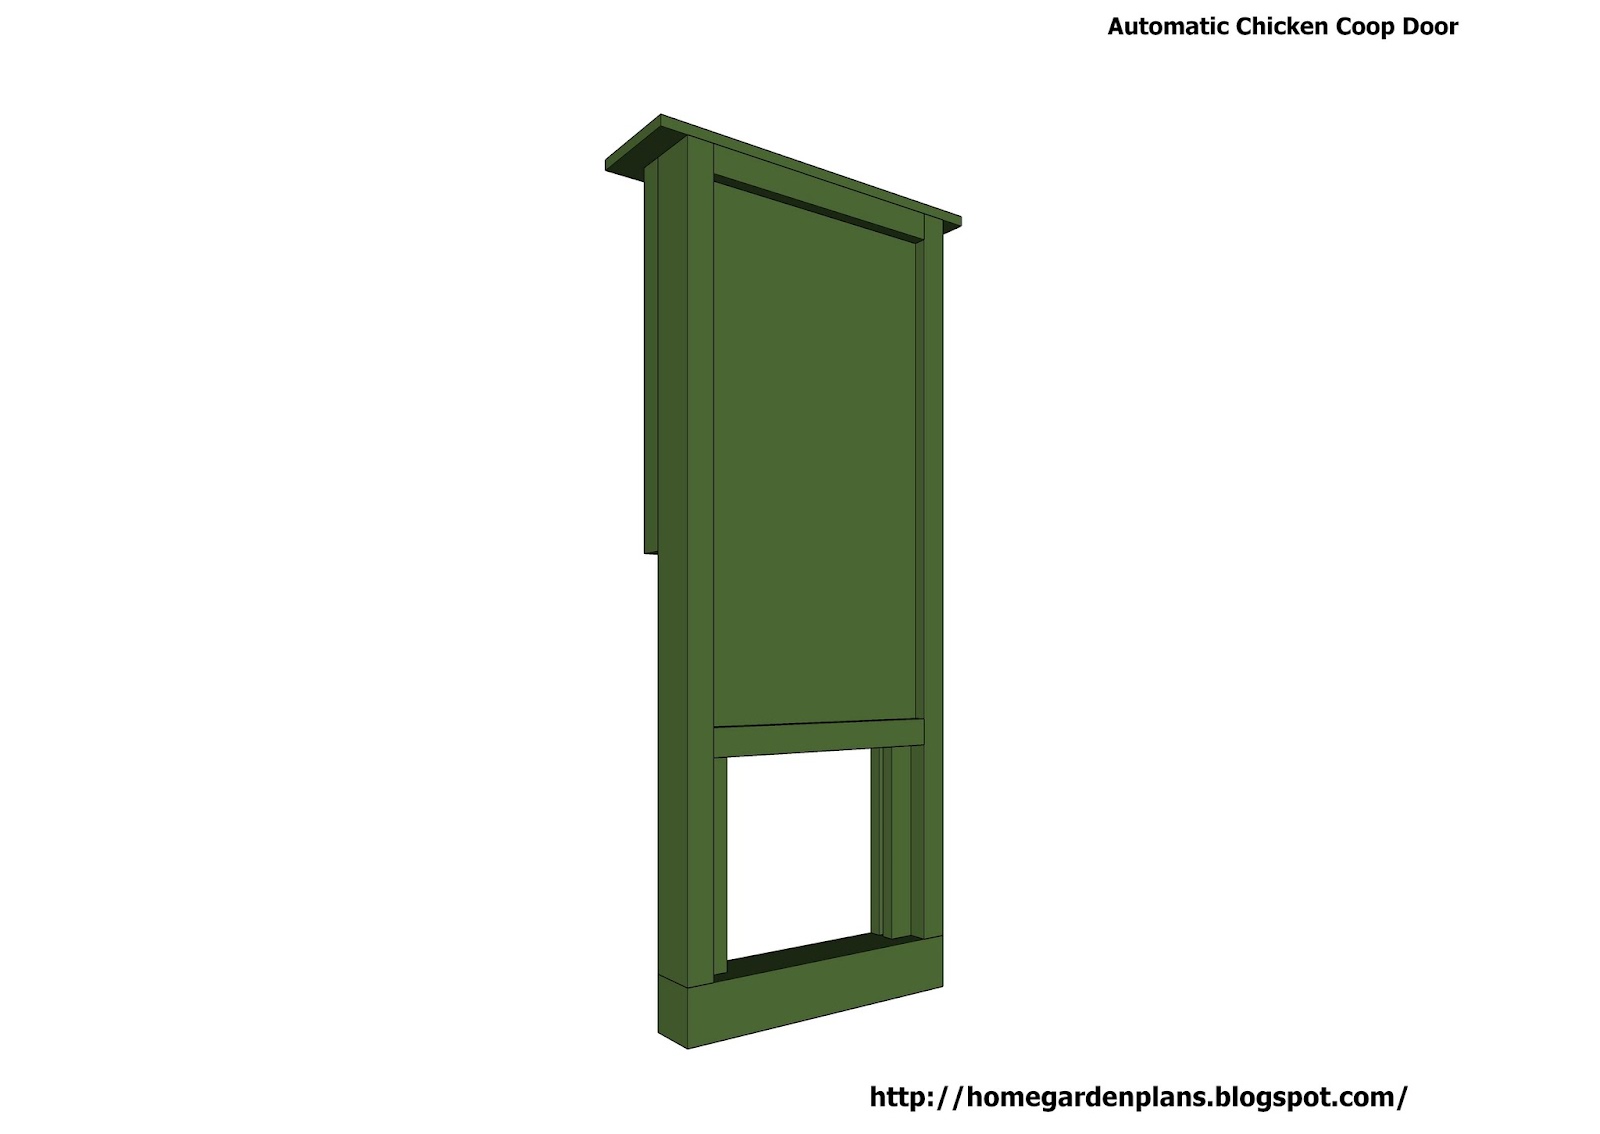  garden plans: Automatic Chicken Coop Door - Free Chicken Coop Plans